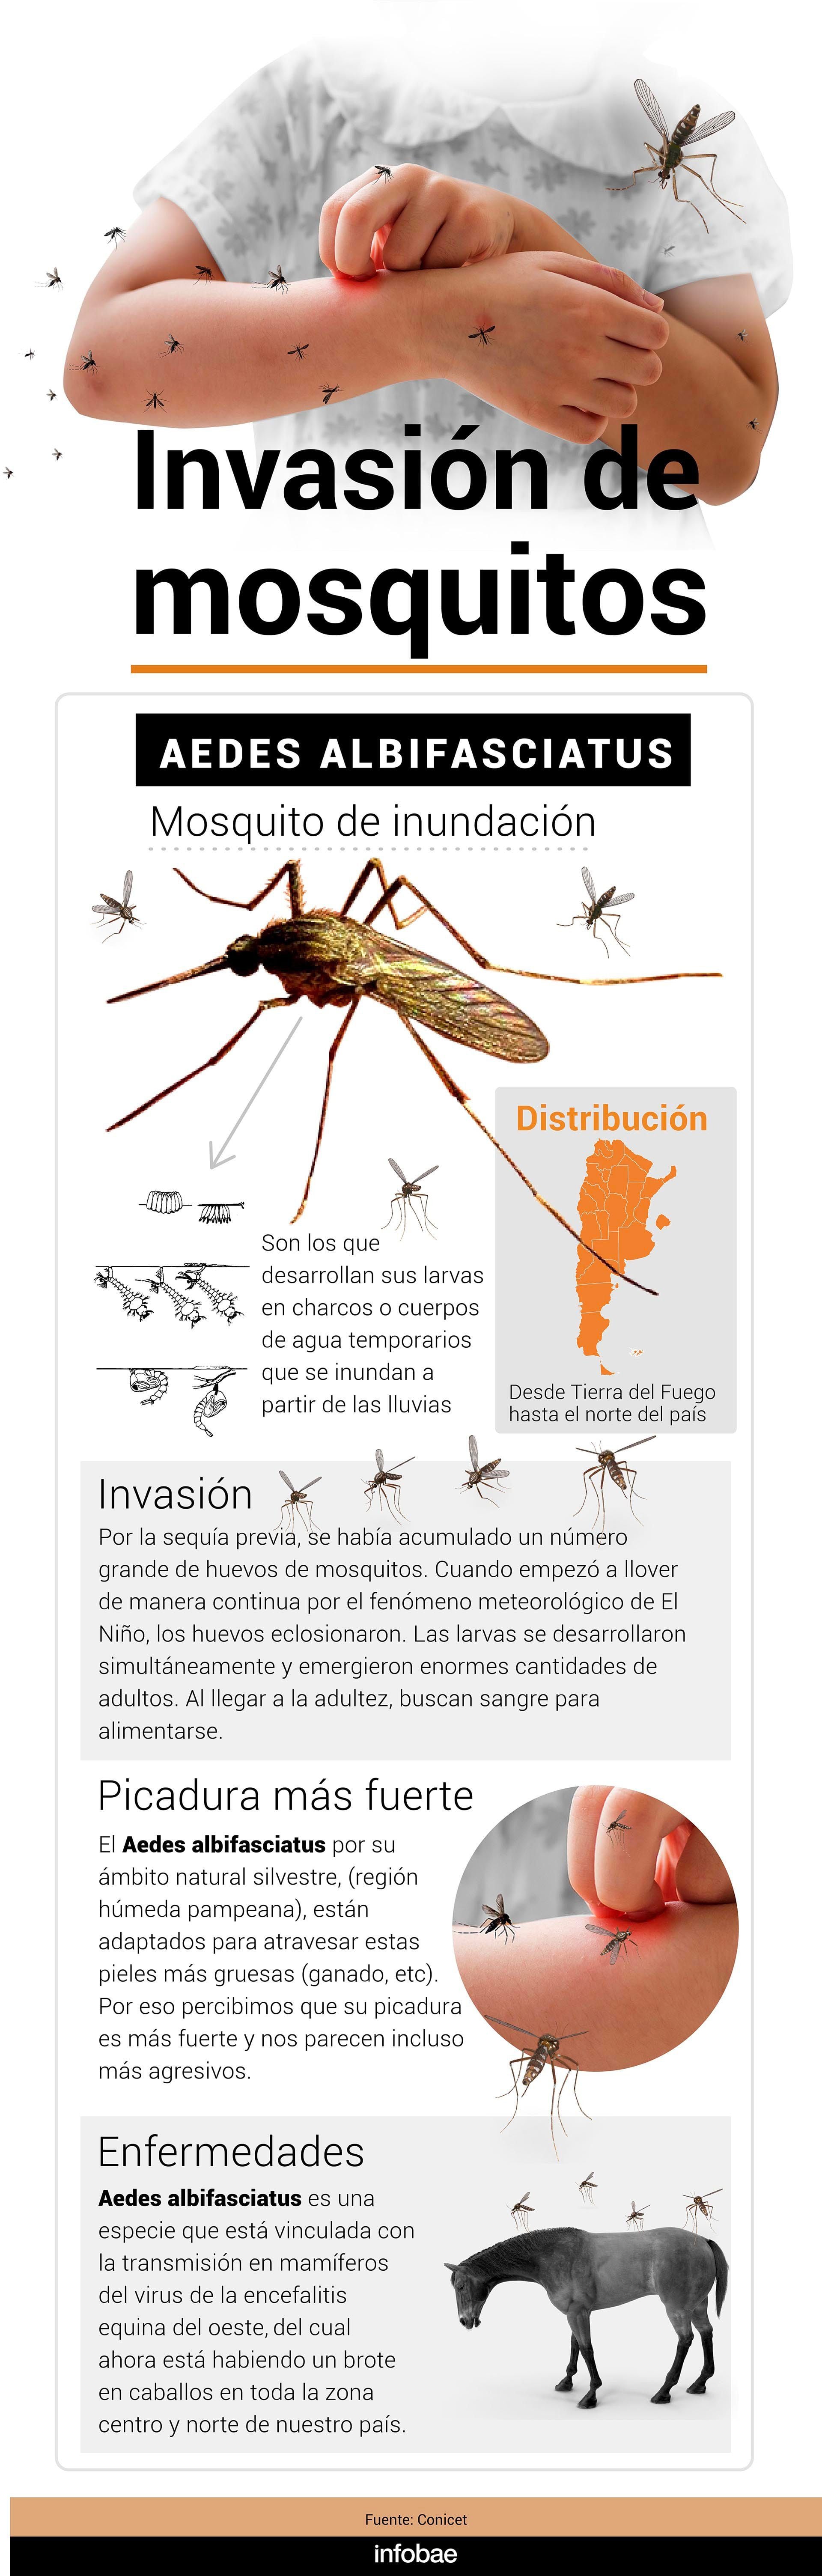 Aedes albifasciatus es un mosquito que tiene una distribución muy amplia en Argentina, desde Tierra del Fuego hasta el norte del país (Infografía Marcelo Regalado)
